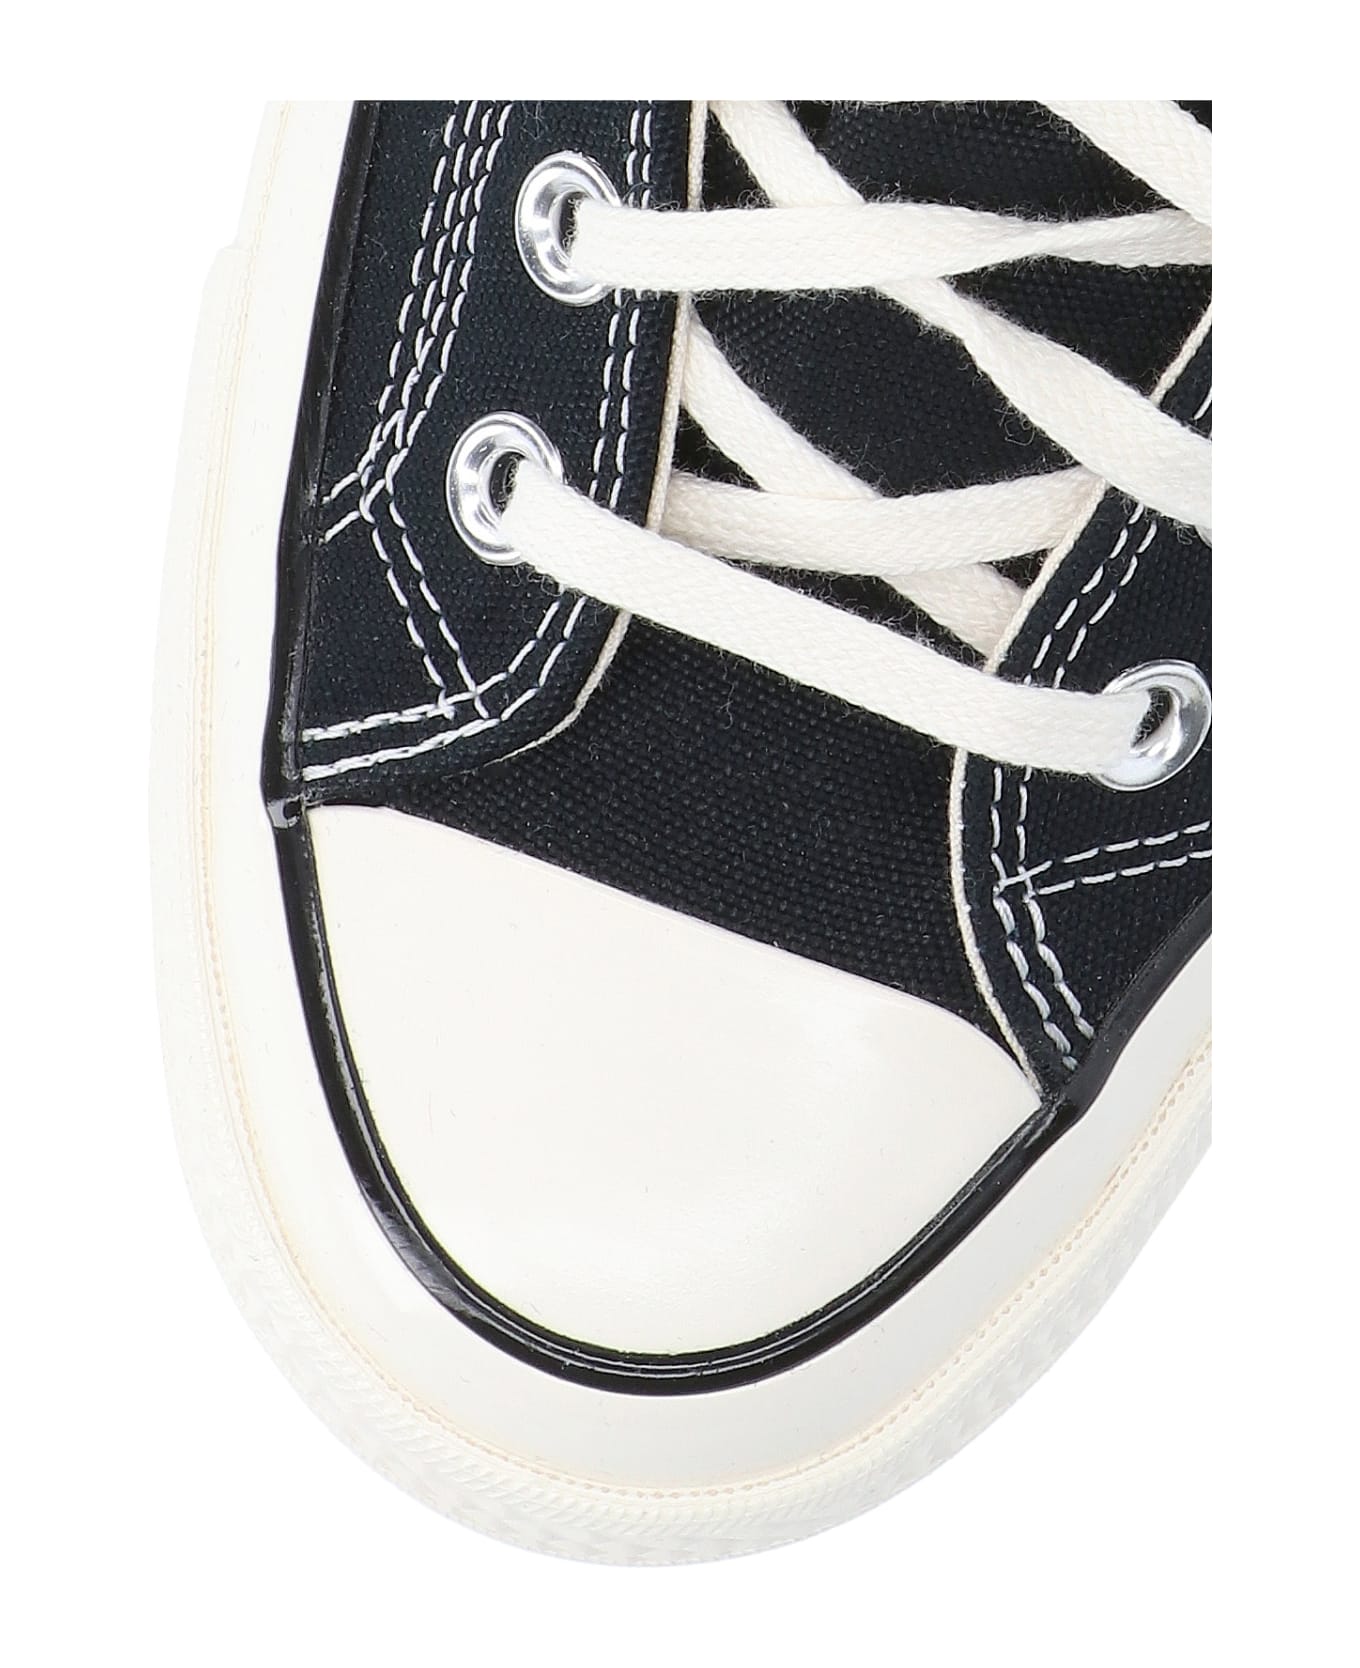 Converse "chuck 70 Vintage Canvas" Sneakers - Black  